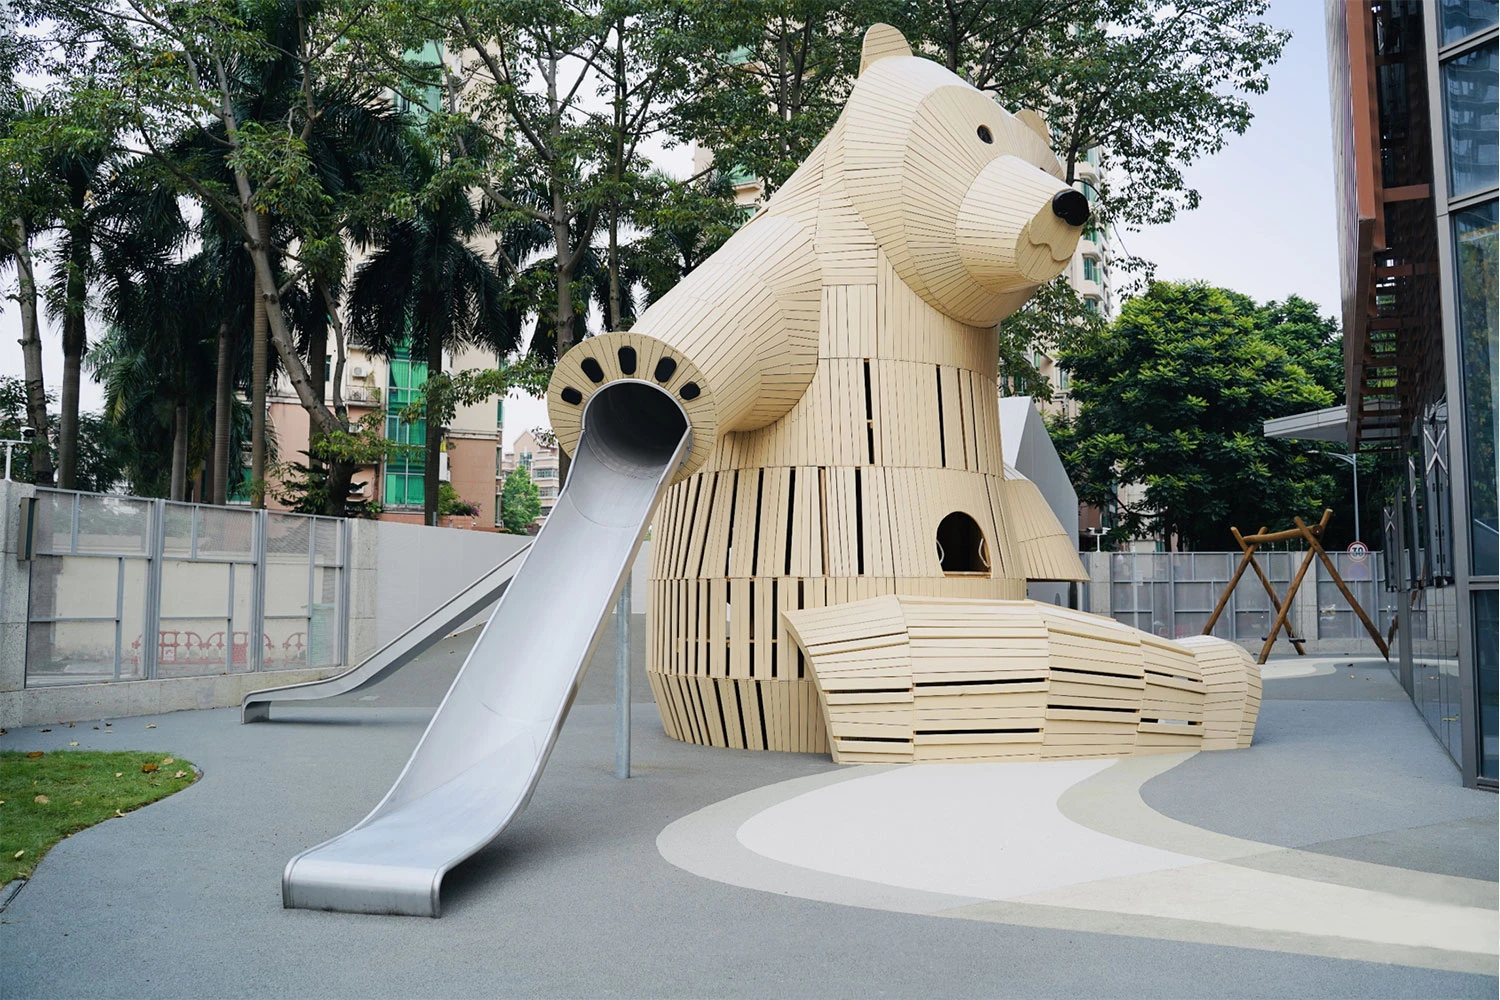 puinen leikkiveistos, joka näyttää isolta karhulta lastentarhassa Kiinassa